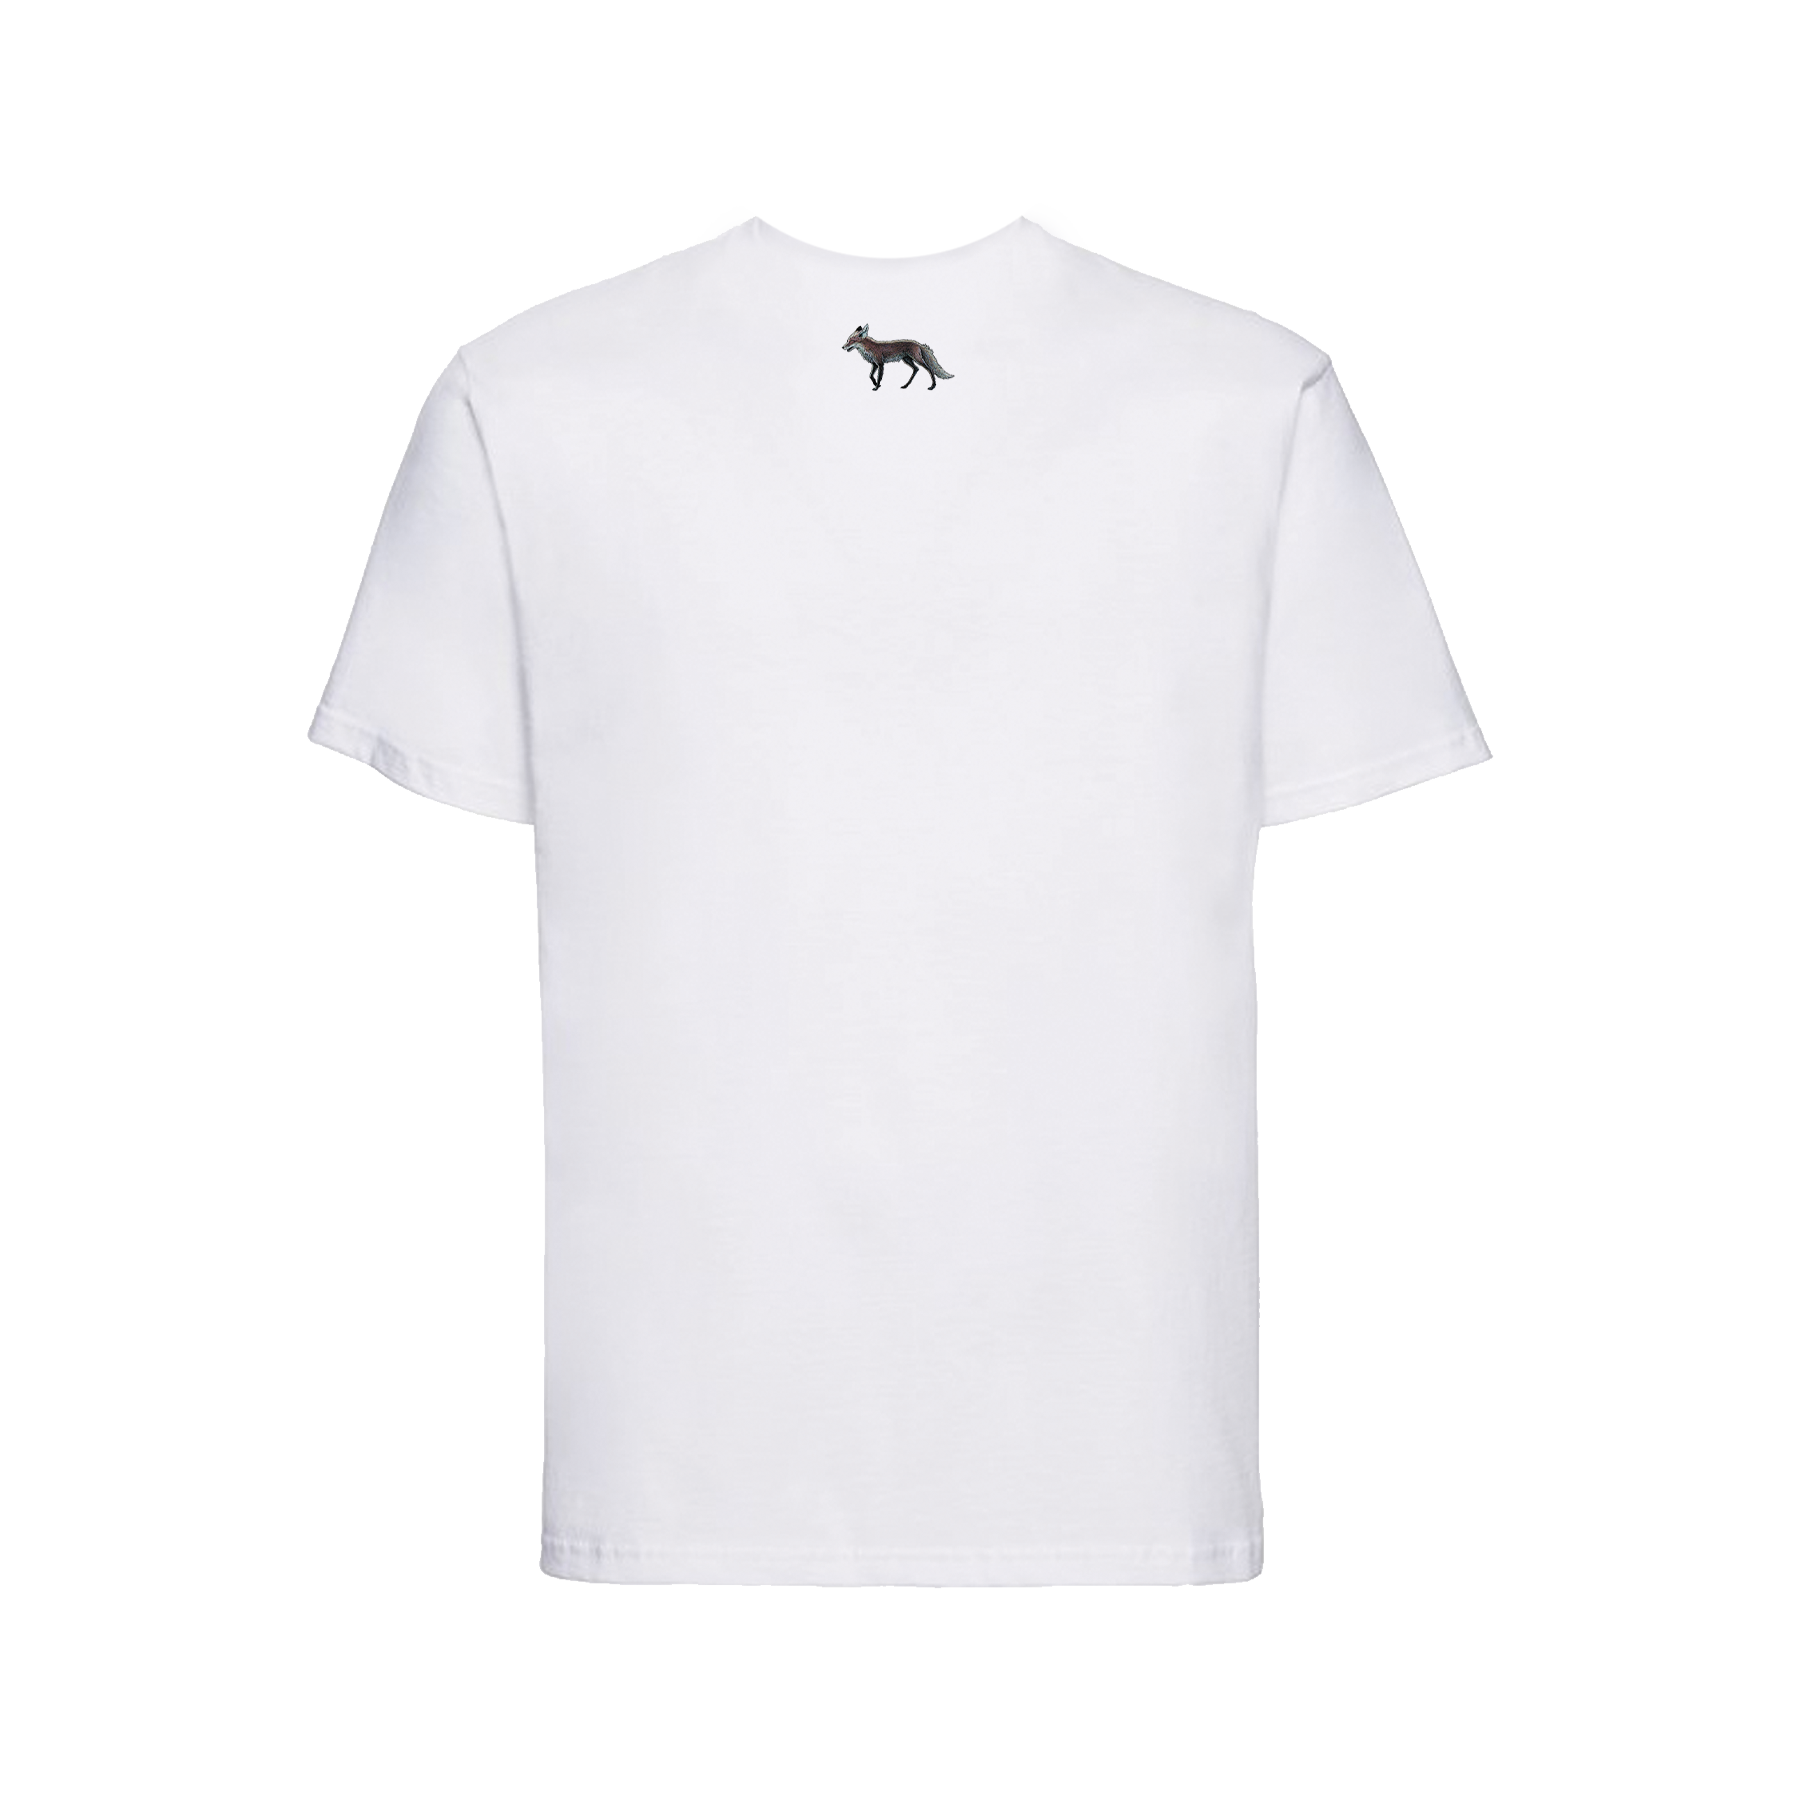 David Sylvian - Manafon (atomized) T-shirt